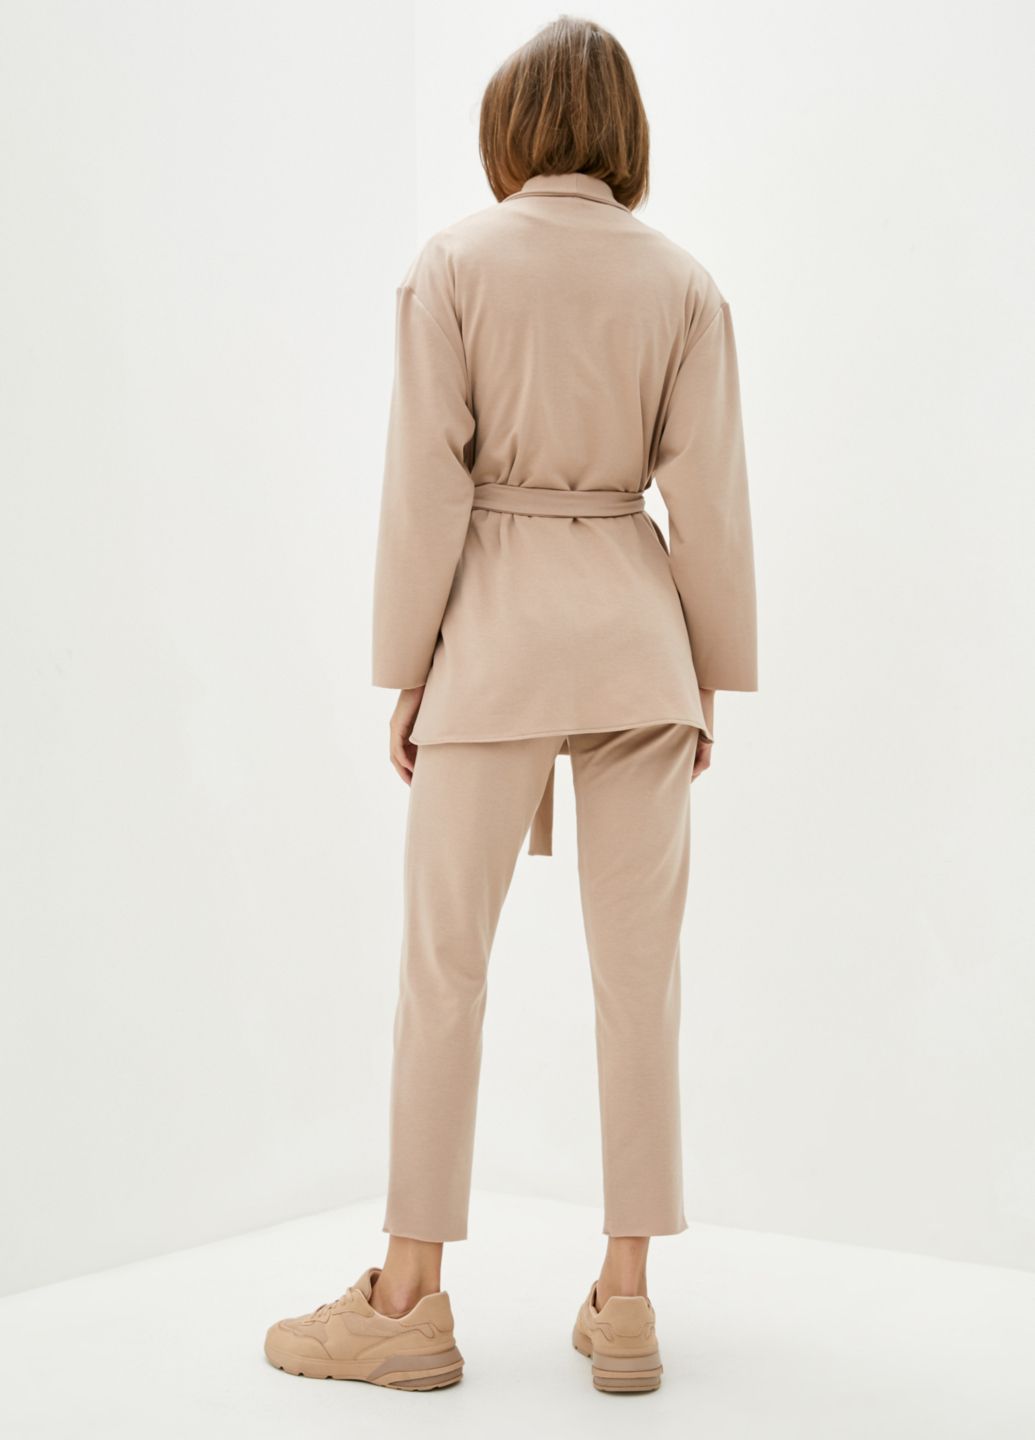 Купить Классический костюм женский бежевого цвета Merlini Йоркшир 100000049, размер 42-44 в интернет-магазине